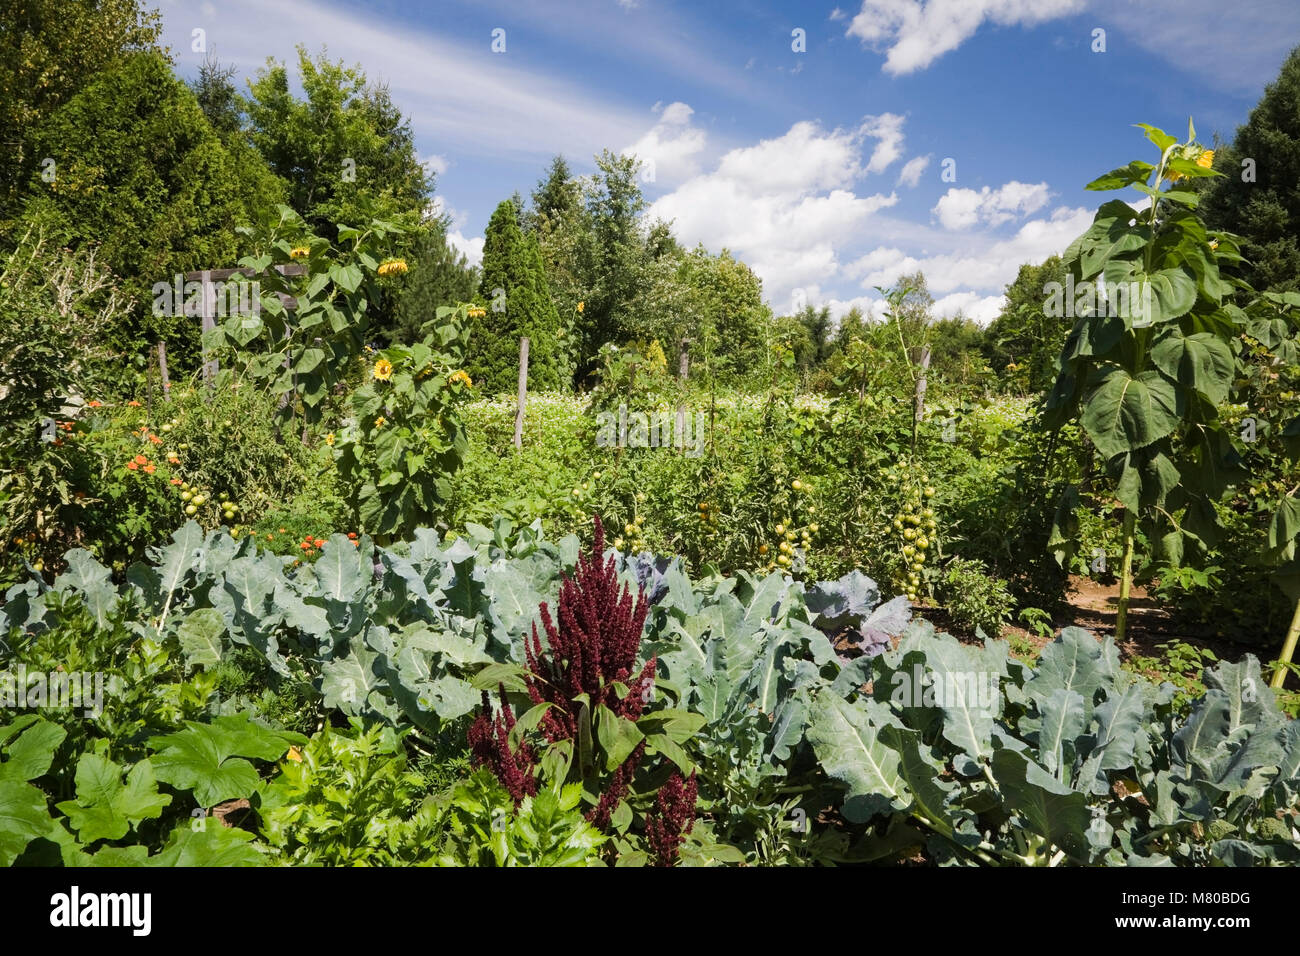 Verschiedene Pflanzen, Sträucher, Blumen und Bäume in einem angelegten  Garten im Sommer Stockfotografie - Alamy